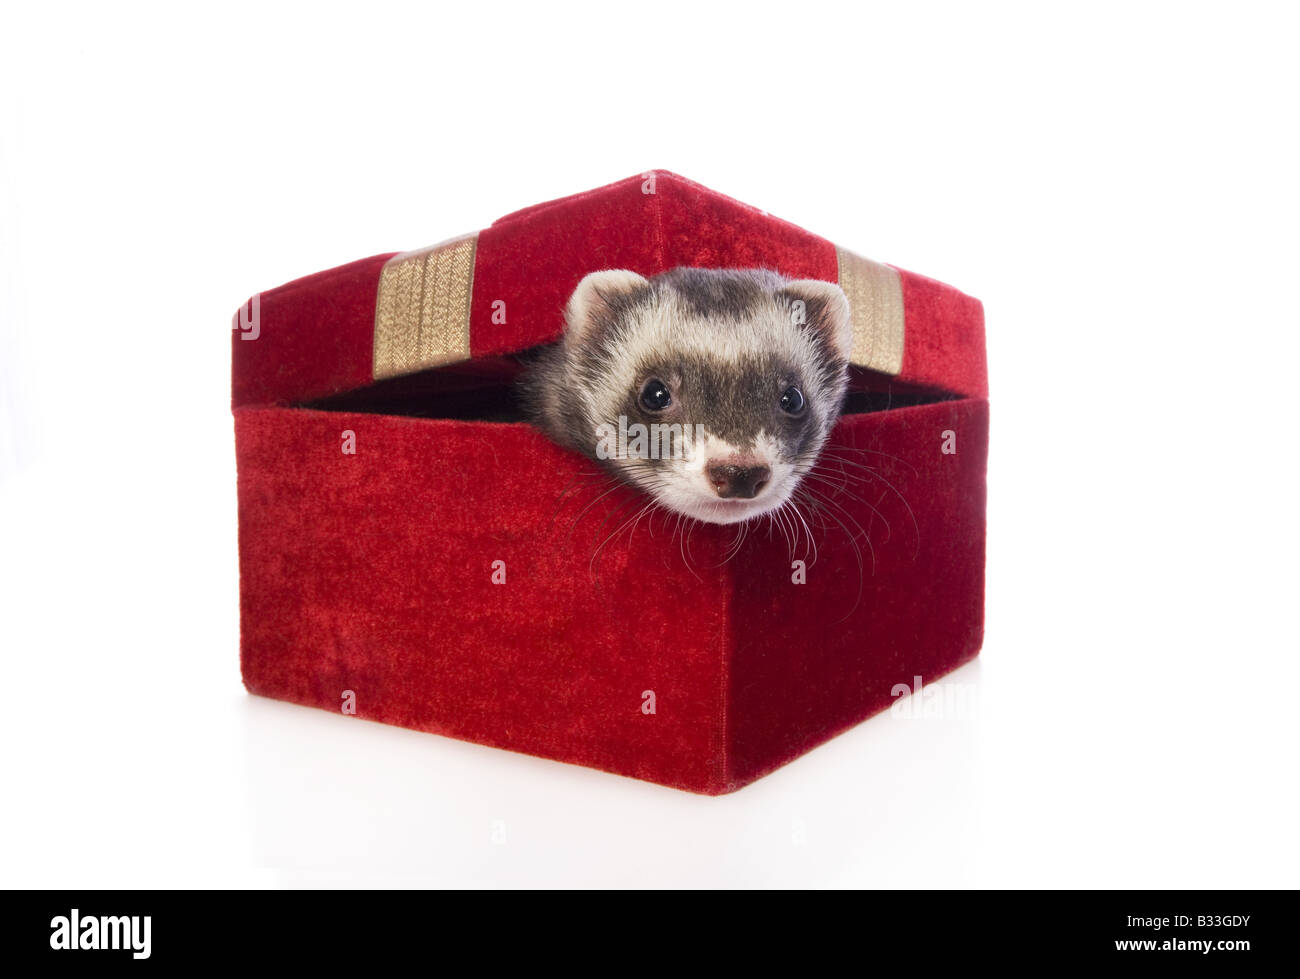 Carino sable ferret sticking testa fuori di velluto rosso scatola regalo isolato su sfondo bianco Foto Stock